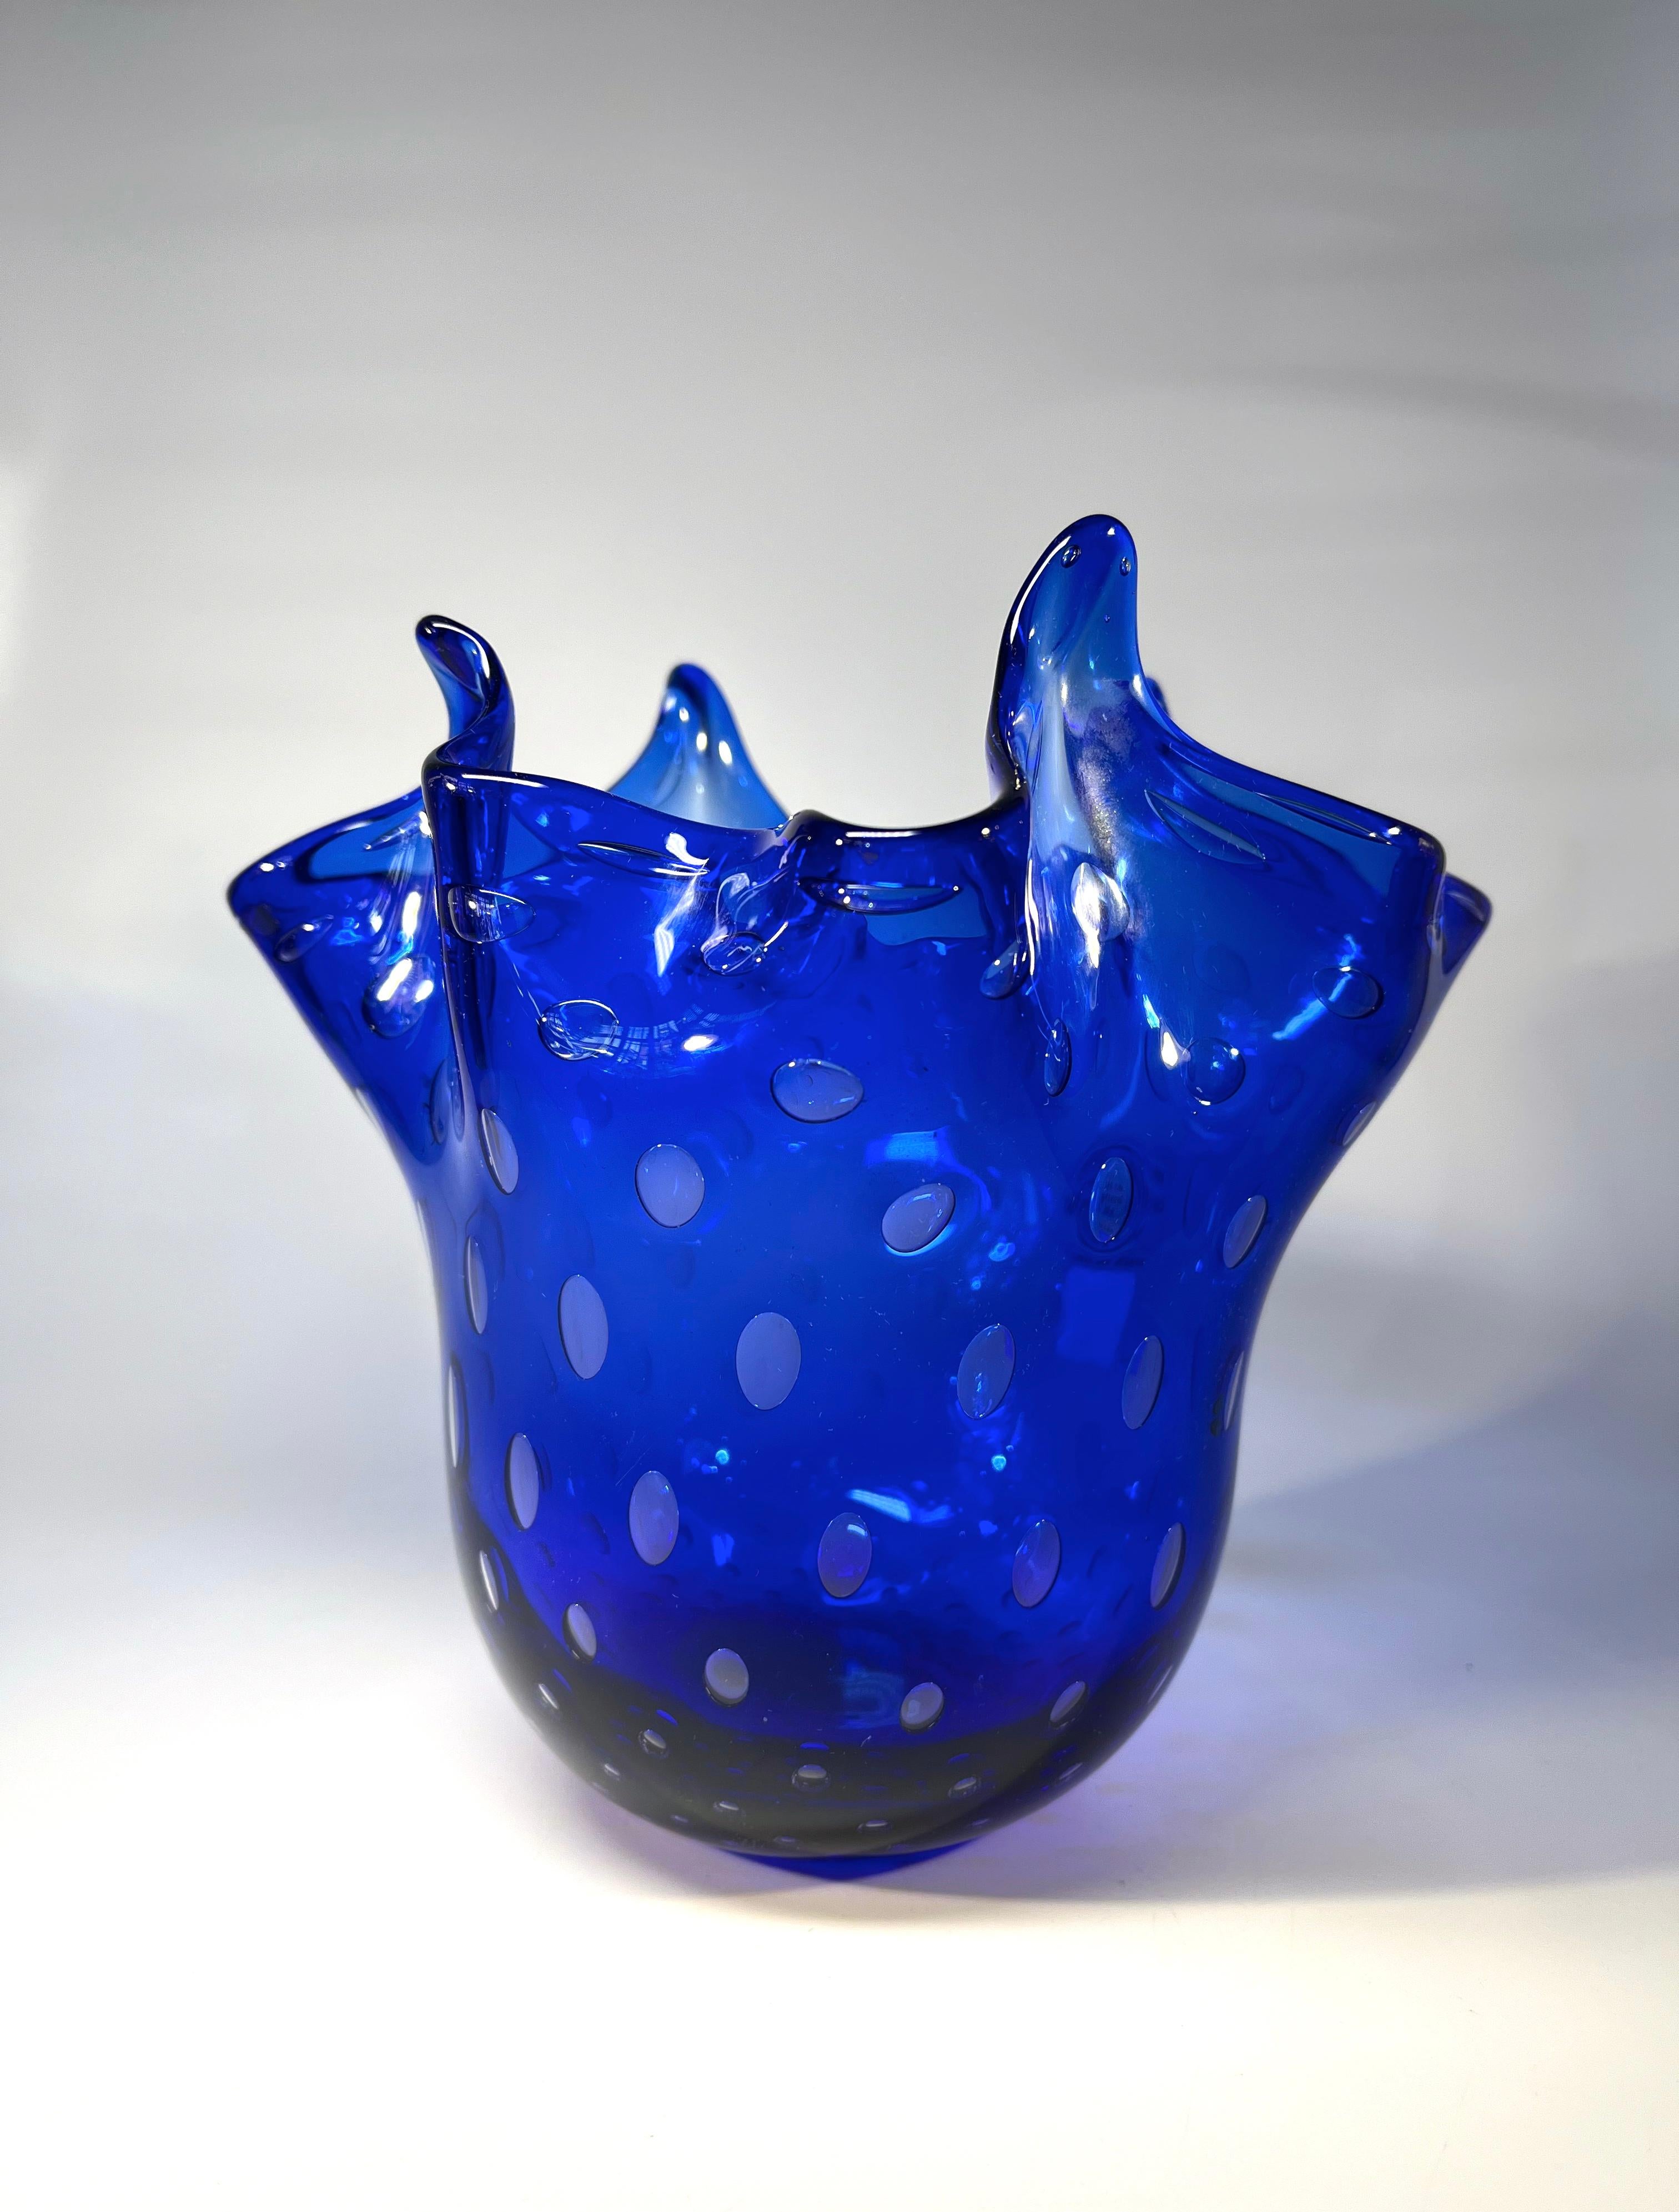 Wunderschöne Taschentuchvase aus blauem Lapislazuli-Glas von Gambaro & Poggi, Murano
Handgeblasen, mit erstaunlicher Textur und Form,  dies ist ein herausragendes klassisches Stück italienischer Glaskunst im Vintage-Stil
Ca. 1974
Unterzeichnet auf